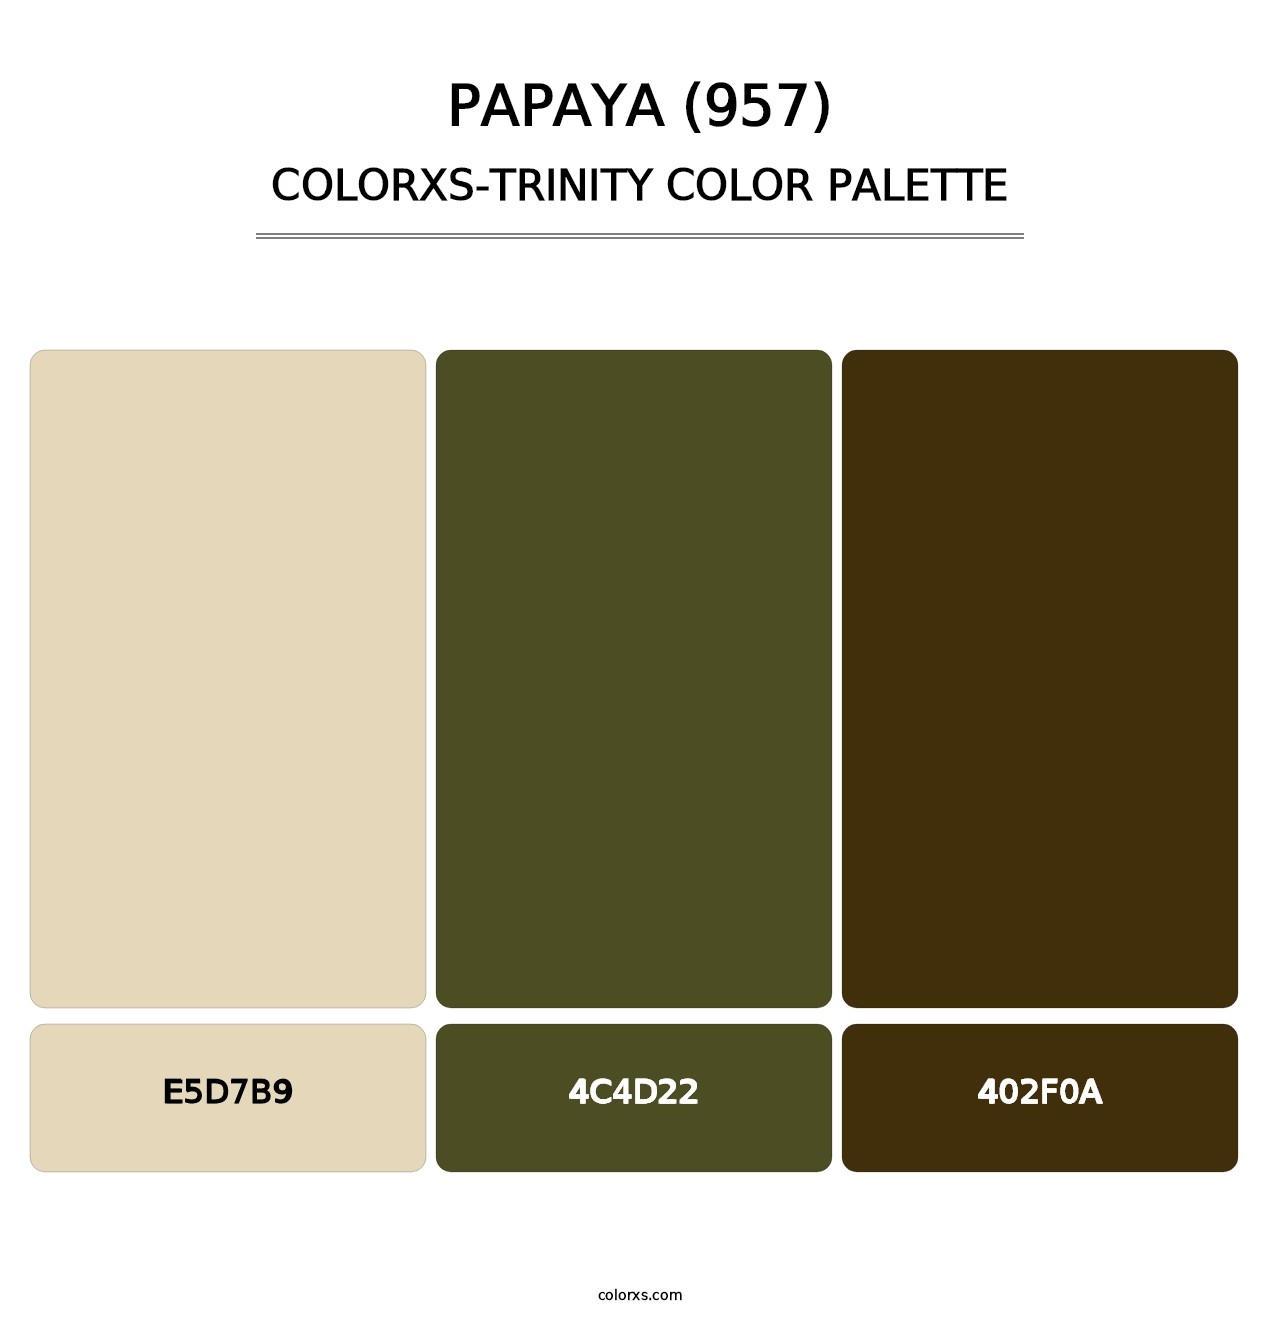 Papaya (957) - Colorxs Trinity Palette